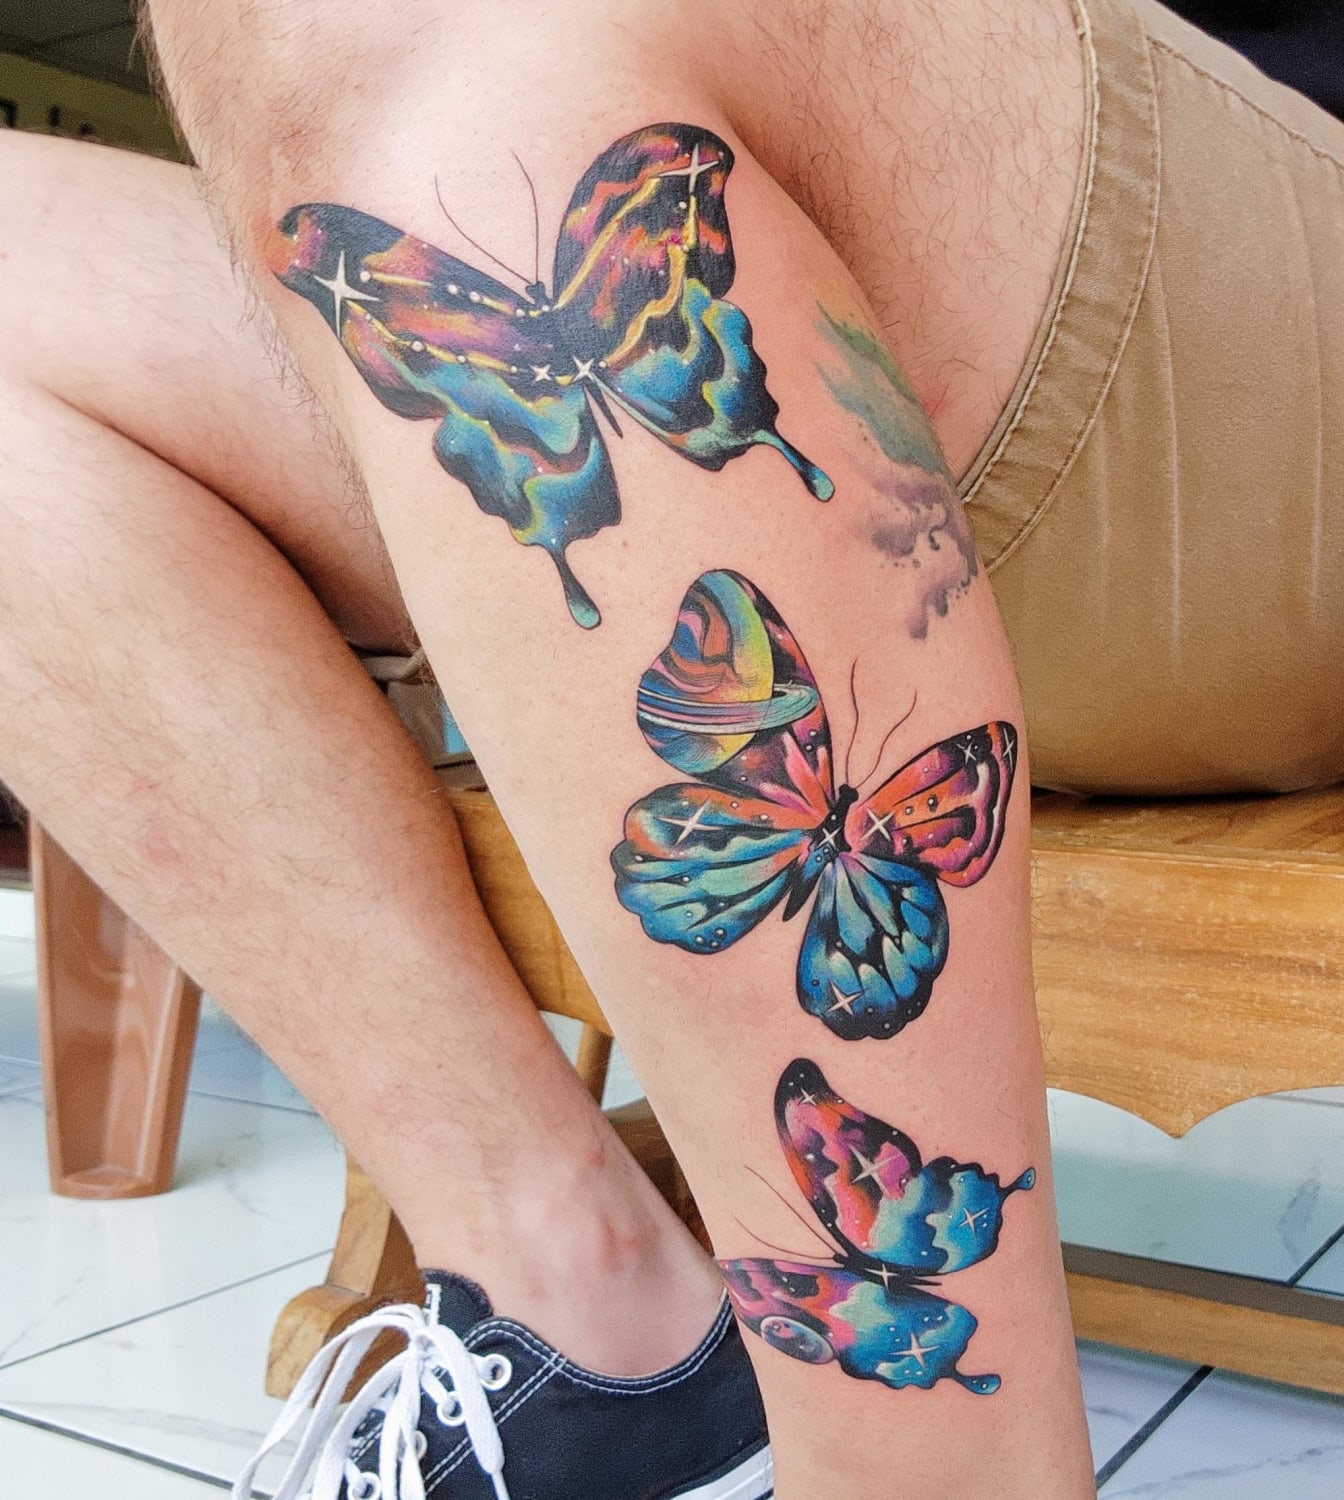 Second leg tattoo. Psychedelic butterflies. El Salvador, 08.10.2022